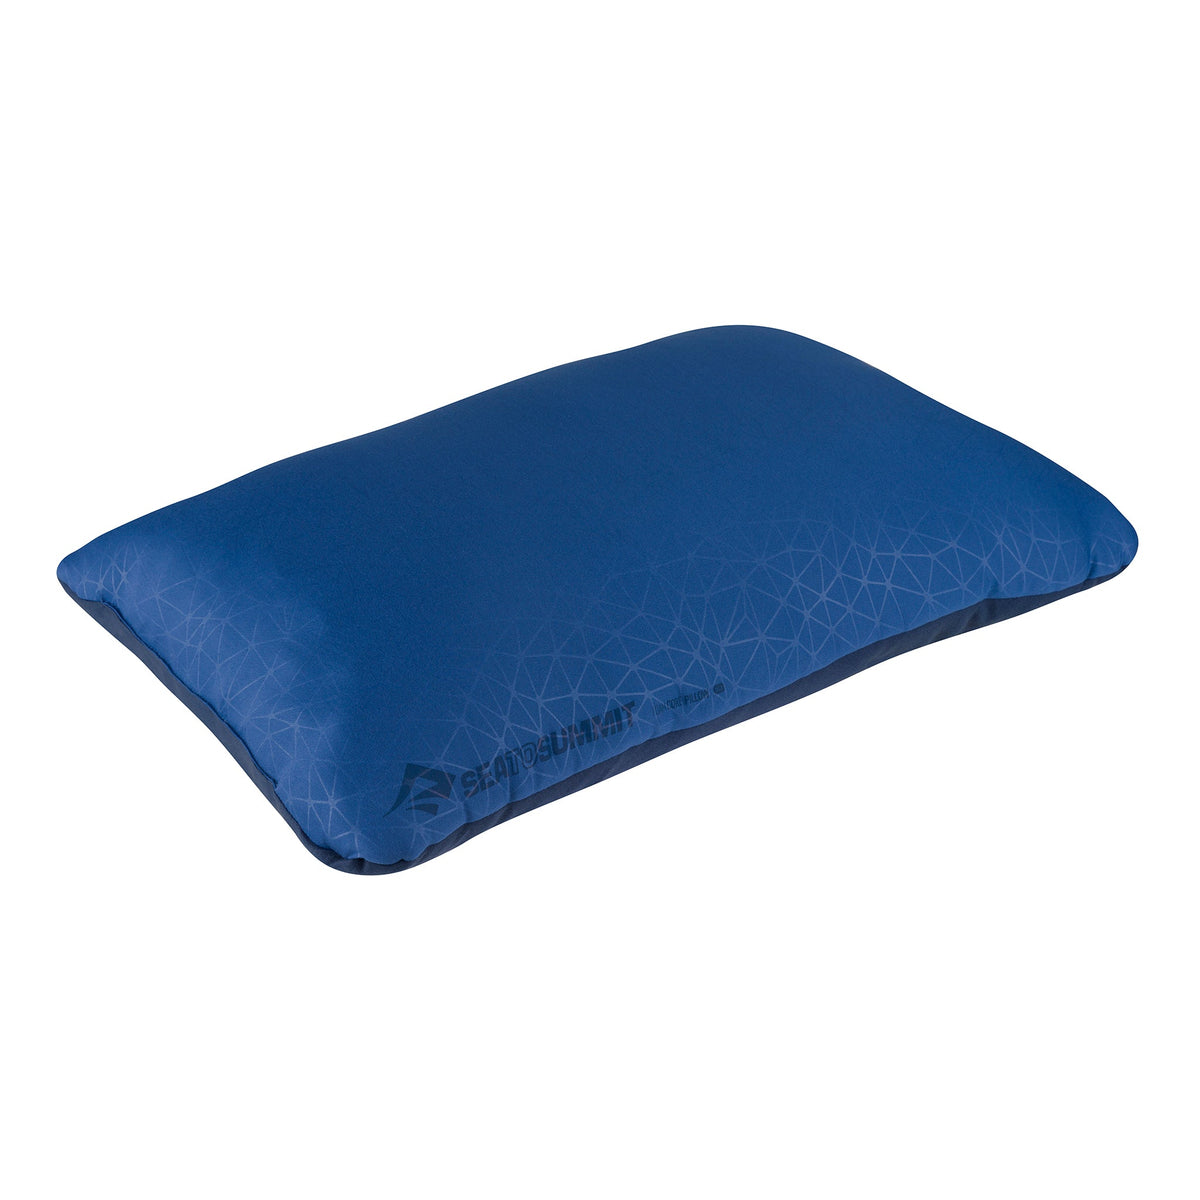 Deluxe / Navy Blue || Foam Core Pillow